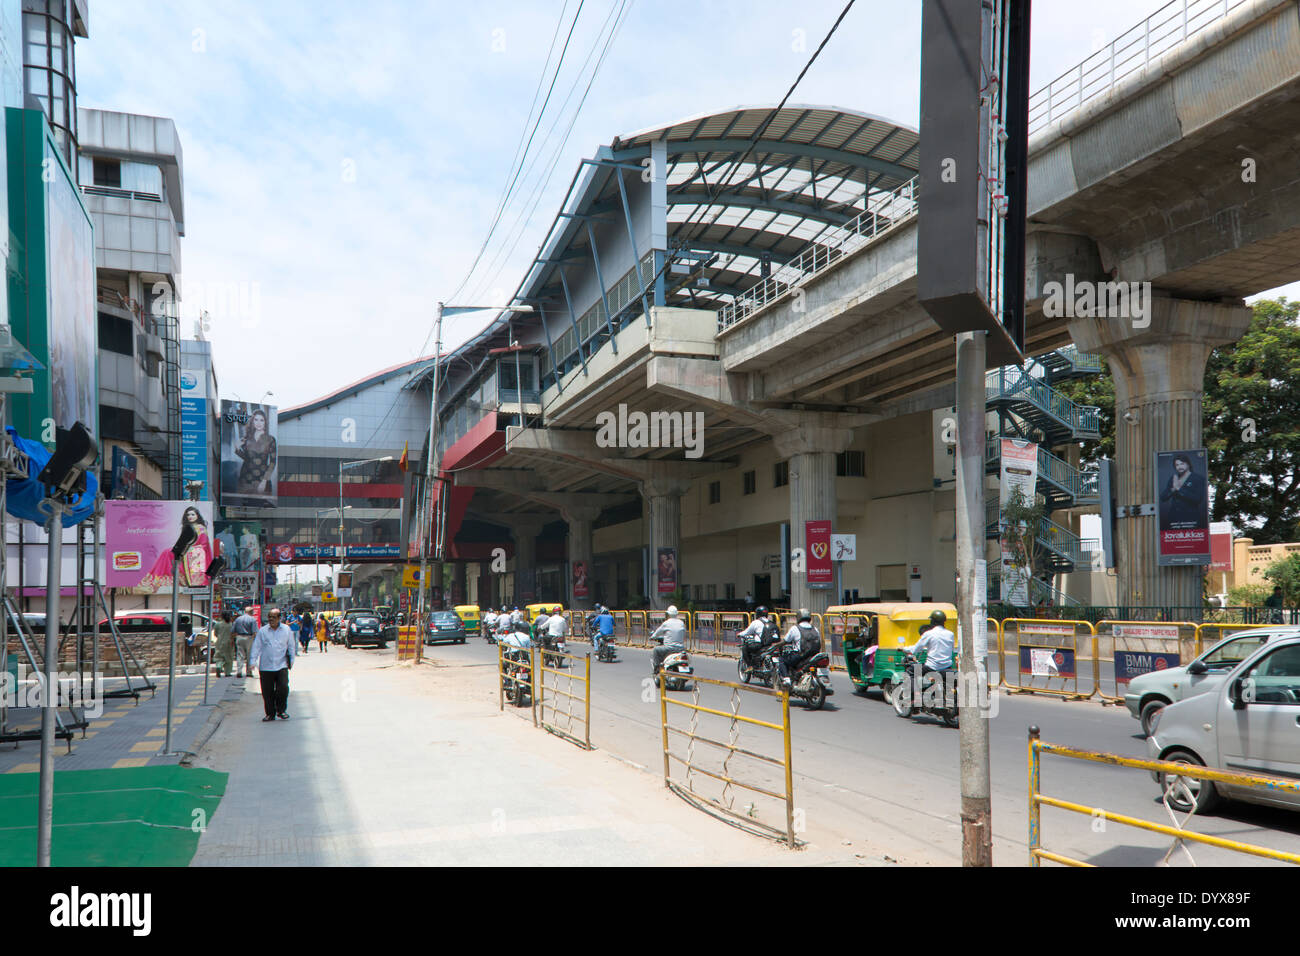 Una scena di strada che mostra le persone e di traffico con la stazione della metropolitana di MG (Mahatma Gandhi) su strada a Bangalore in Karnataka, India Foto Stock